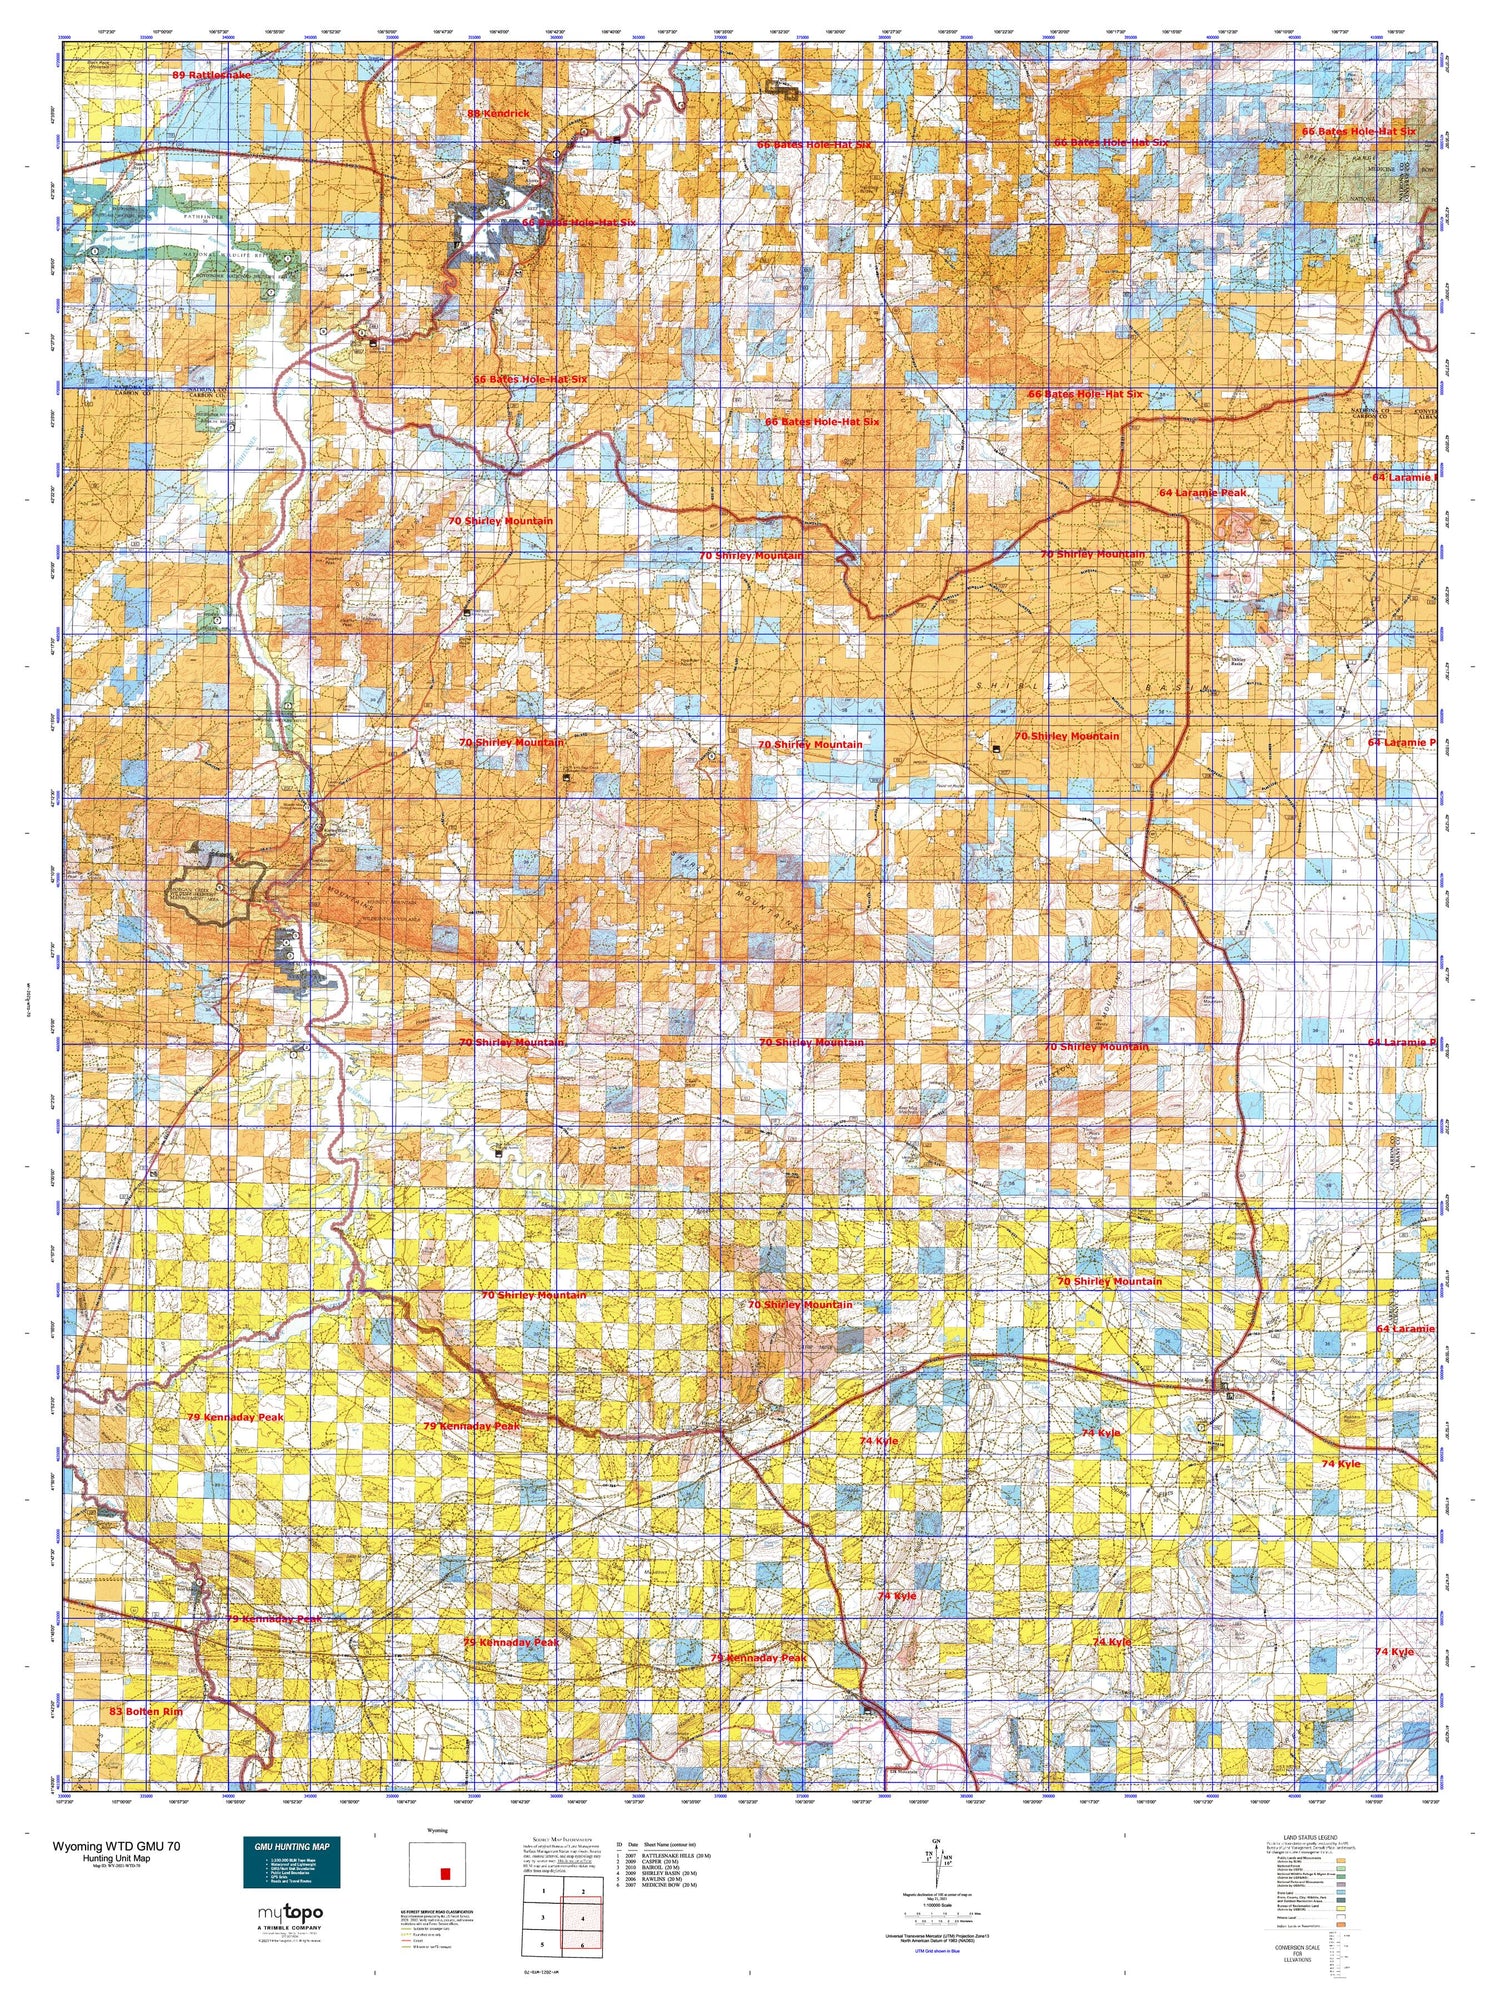 Wyoming Whitetail Deer GMU 70 Map Image